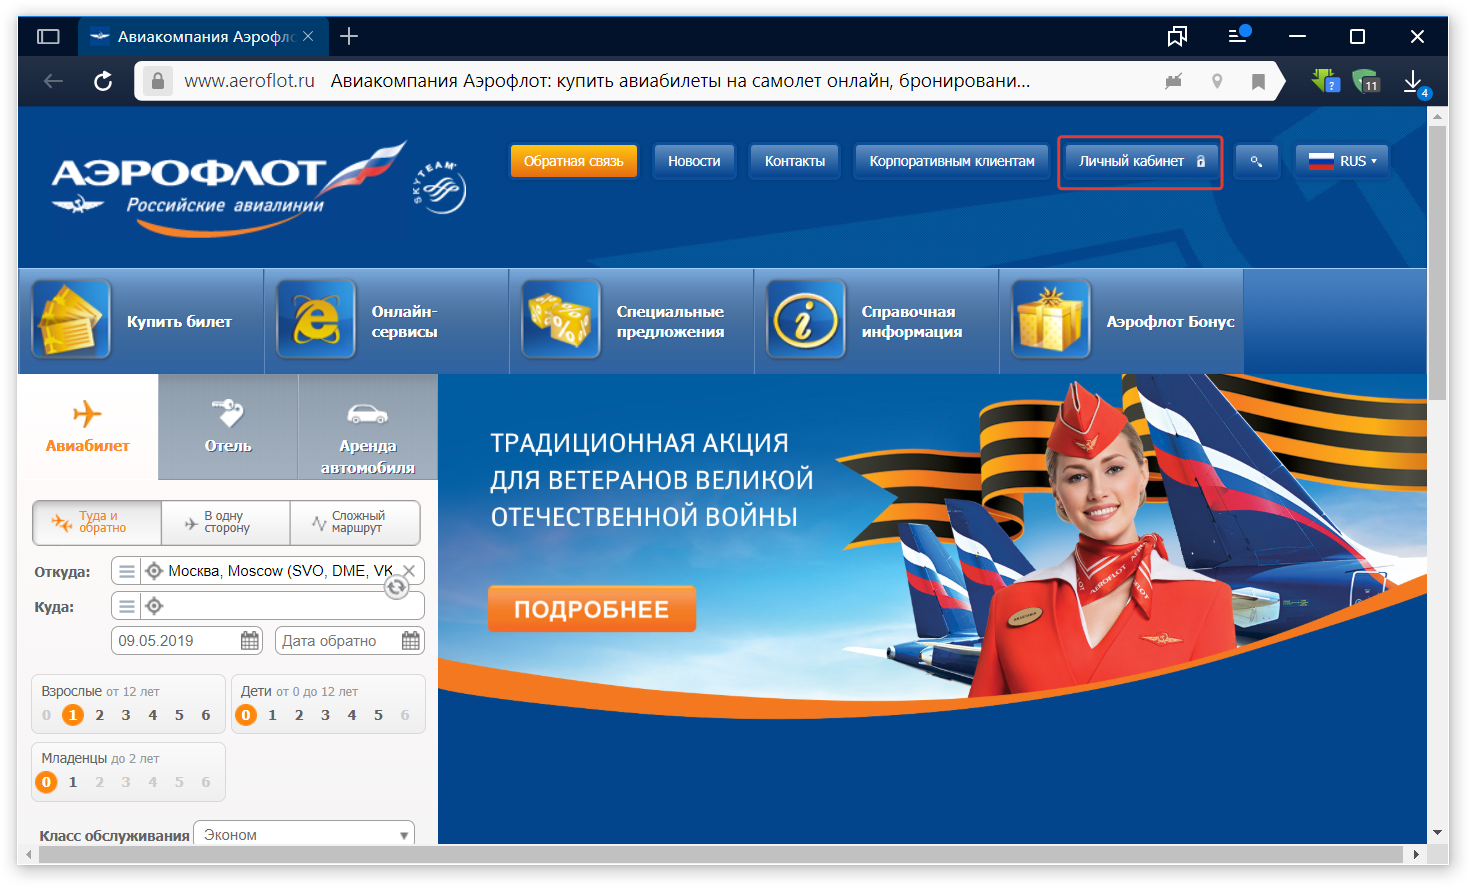 Дешевые авиабилеты сайт аэрофлот купить авиабилет из санкт петербурга в владивосток